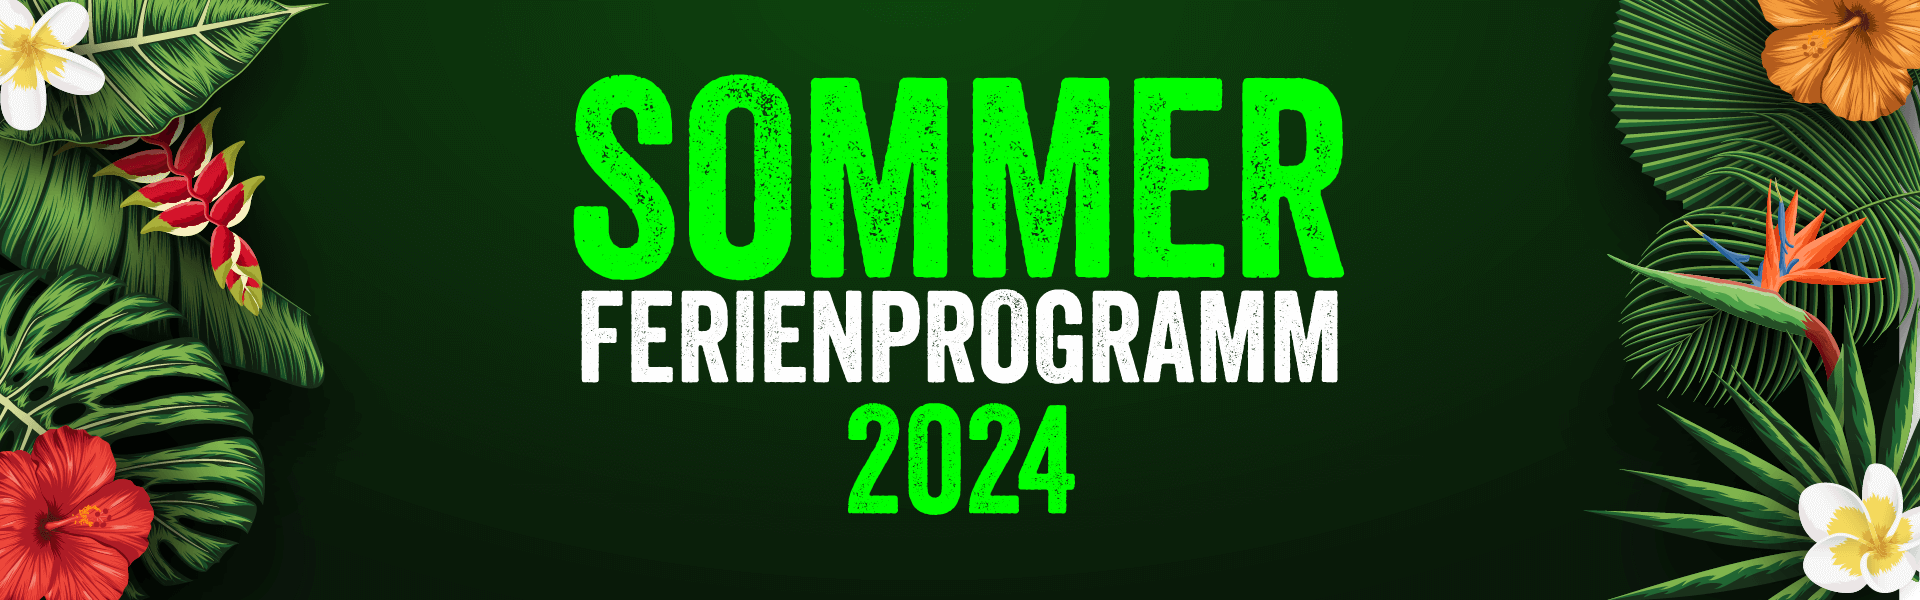 Sommerferienprogramm Header 2024